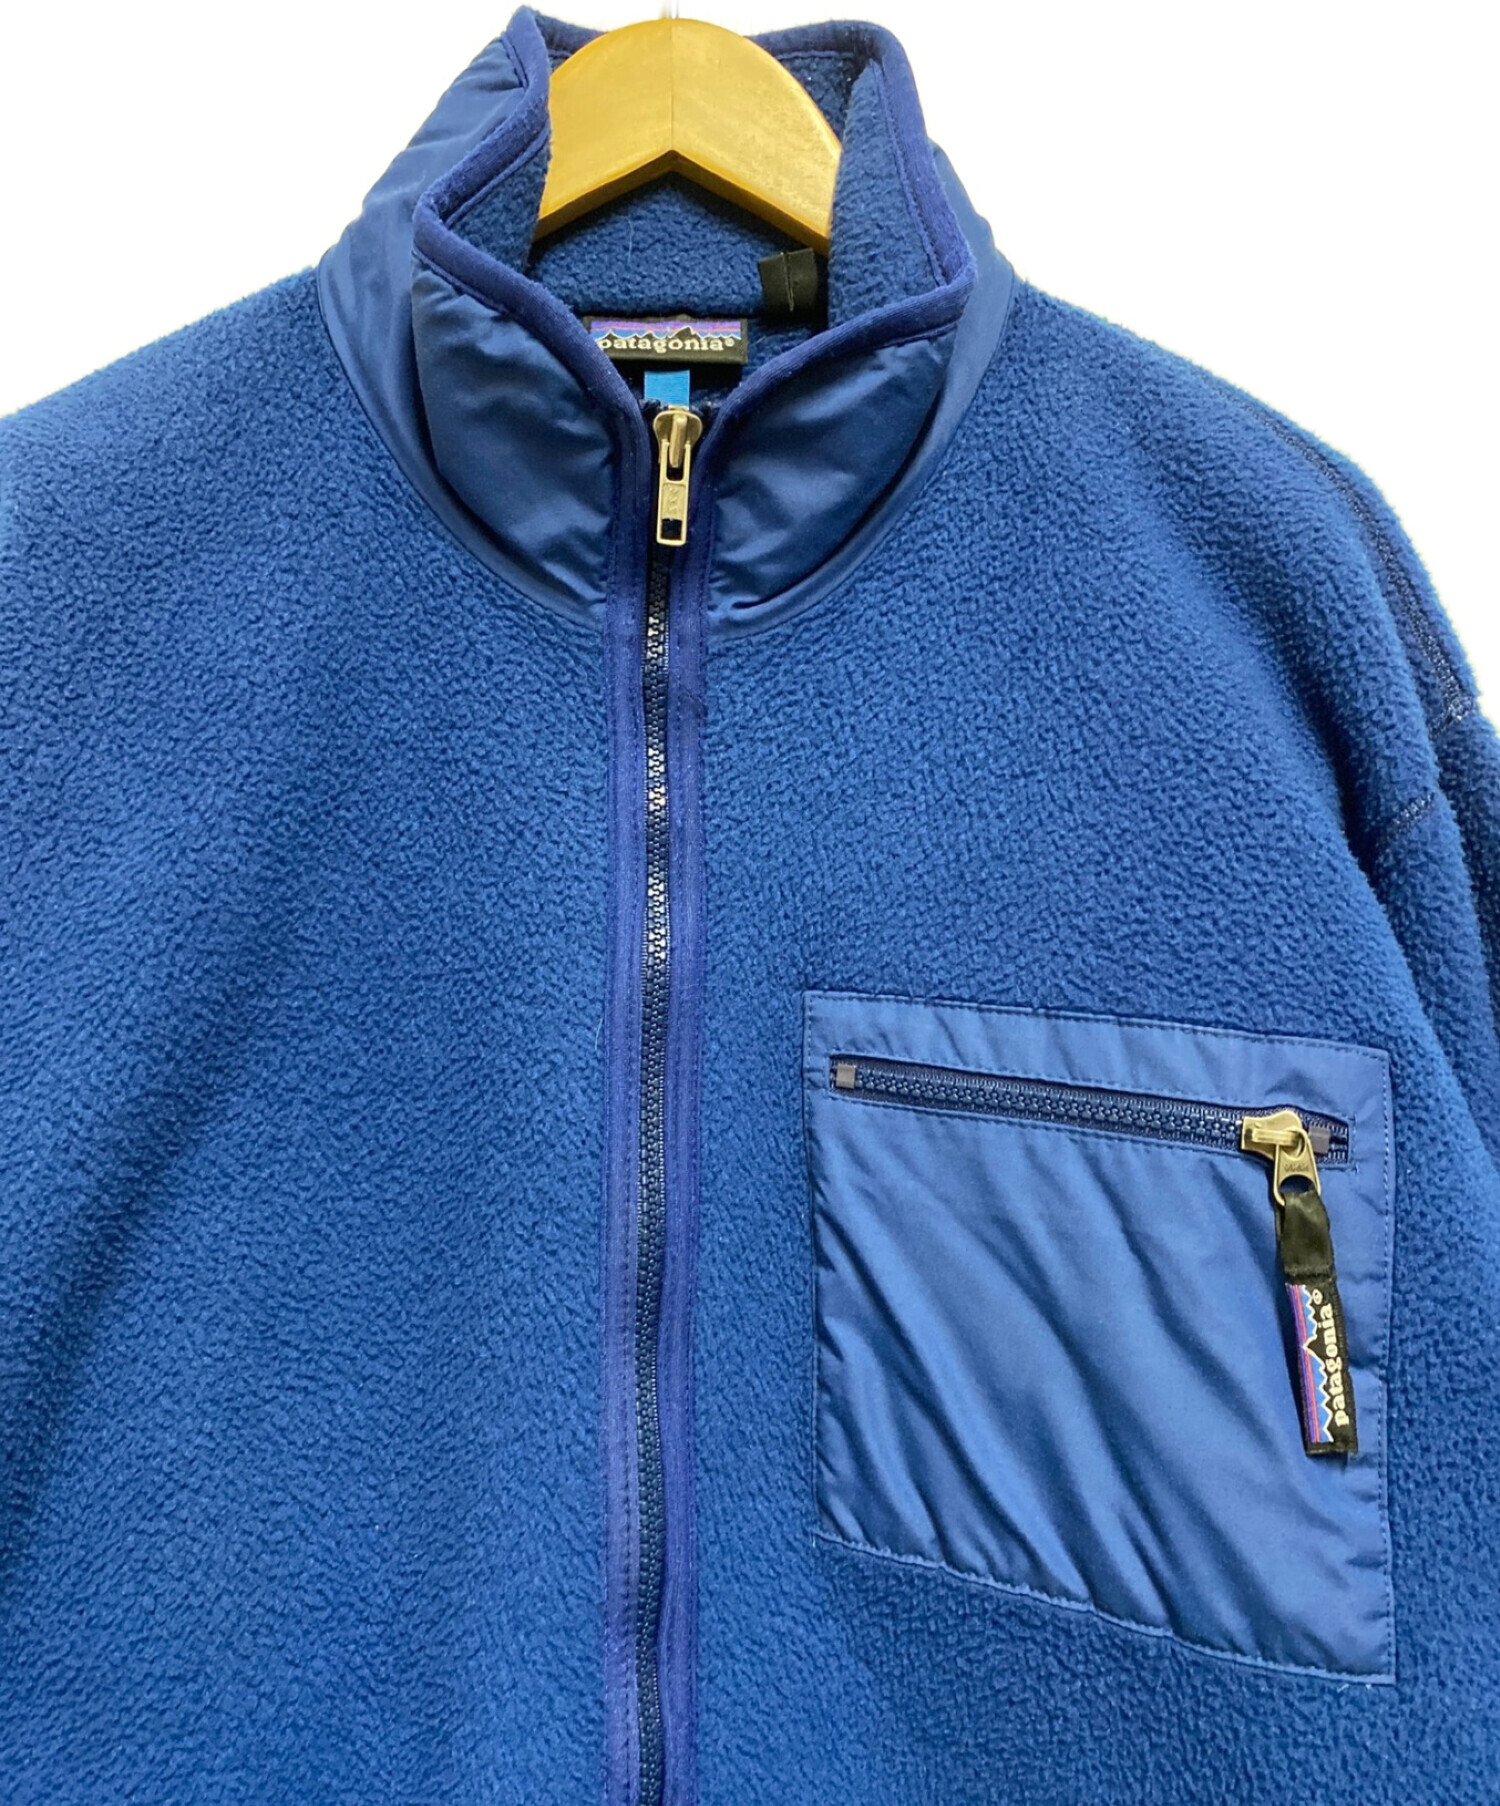 Patagonia (パタゴニア) 90sフリースジャケット ブルー サイズ:L